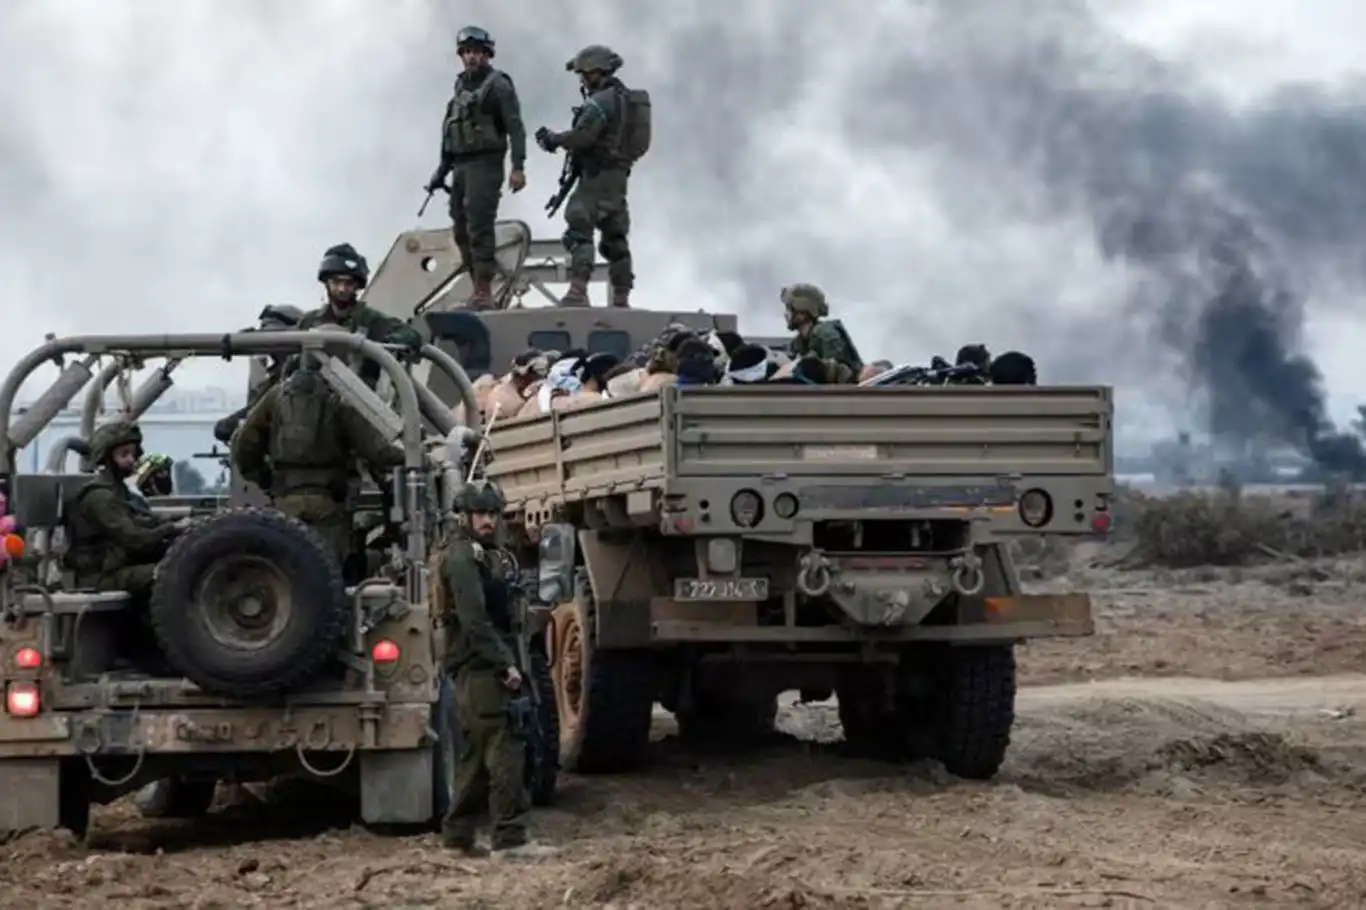 مقررة الأمم المتحدة لولور: "الدول الغربية التي تزود إسرائيل بالأسلحة منافقة"